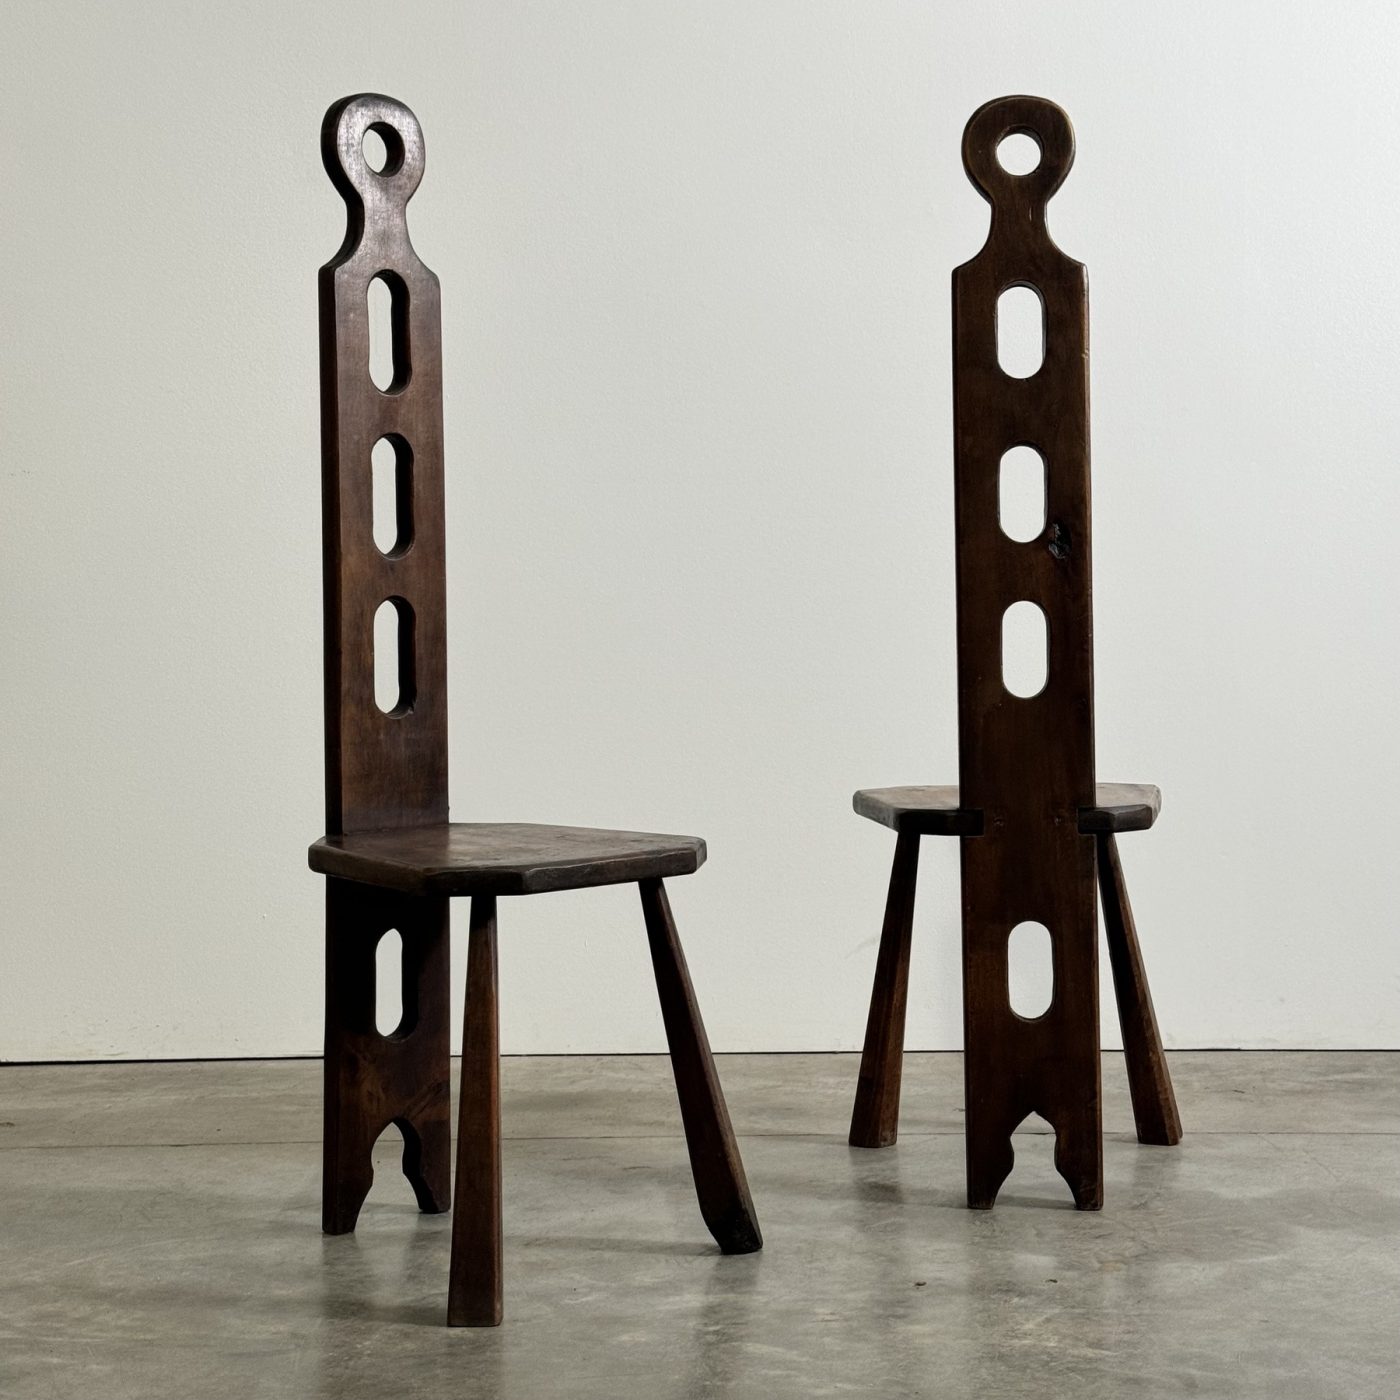 objet-vagabond-tripod-chairs0004